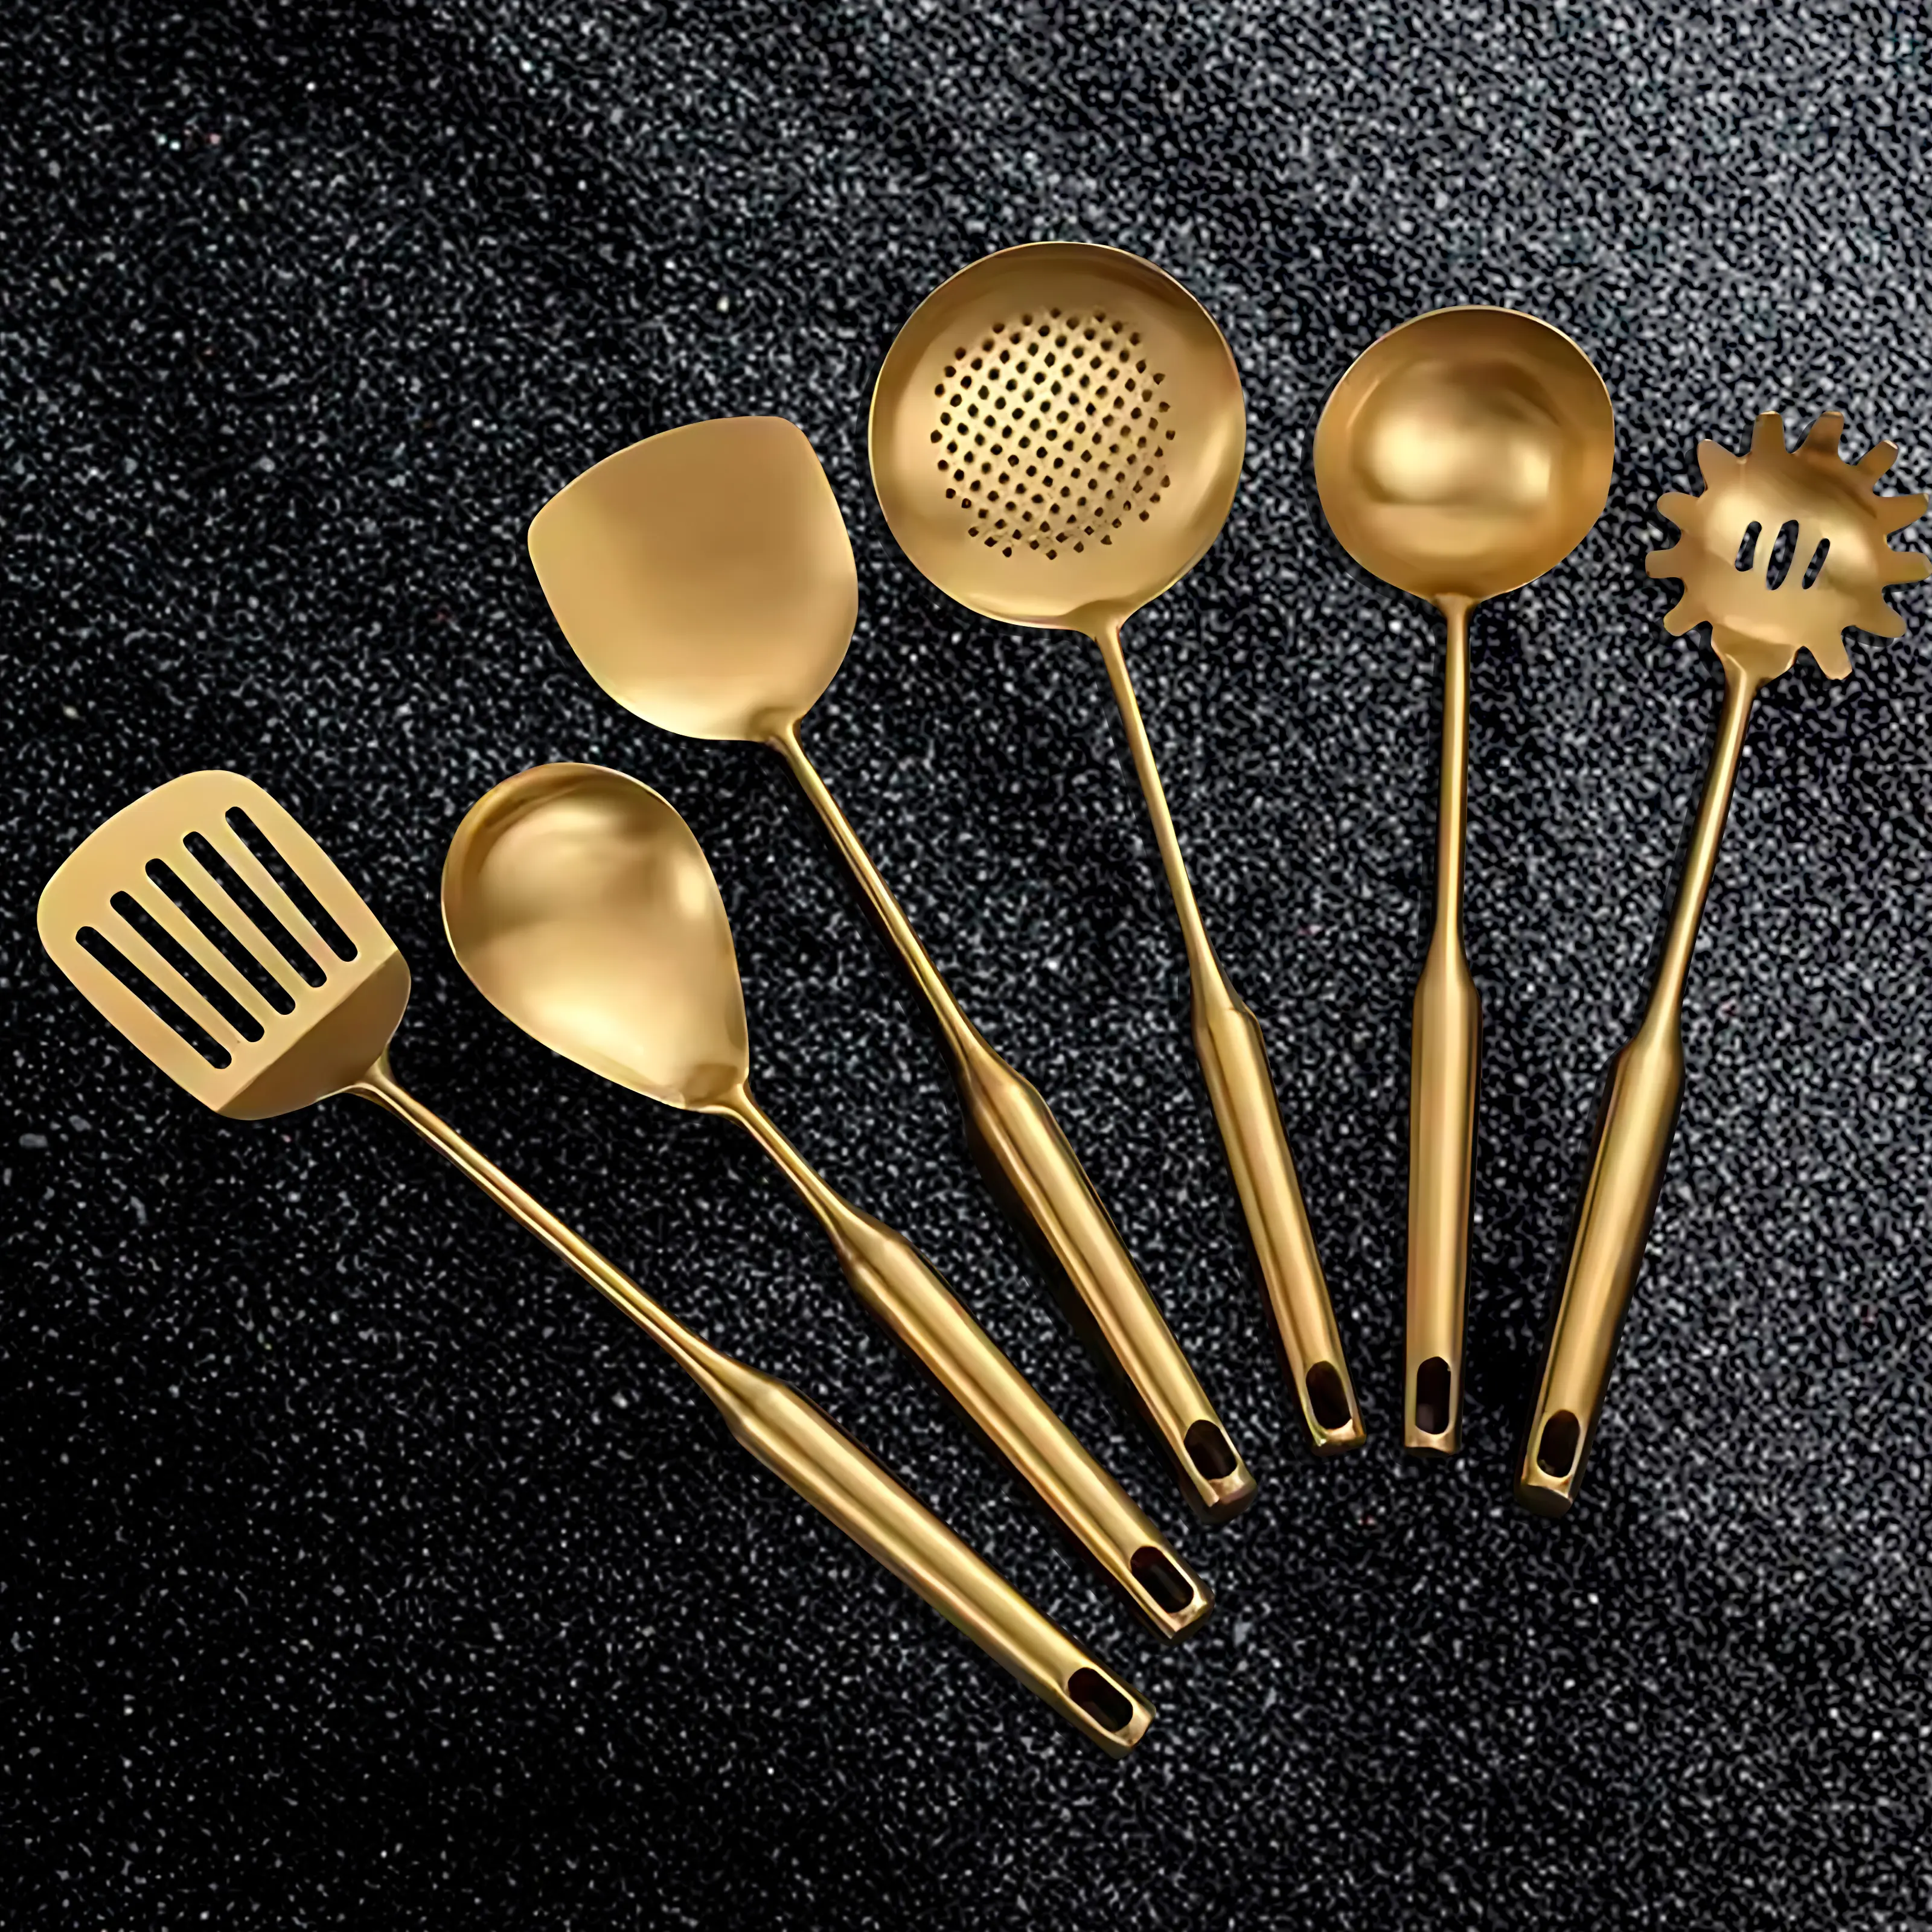 6 uds. De utensilios de cocina dorados de acero inoxidable, herramientas de cocina, juego de utensilios de cocina, juego de regalo con soporte